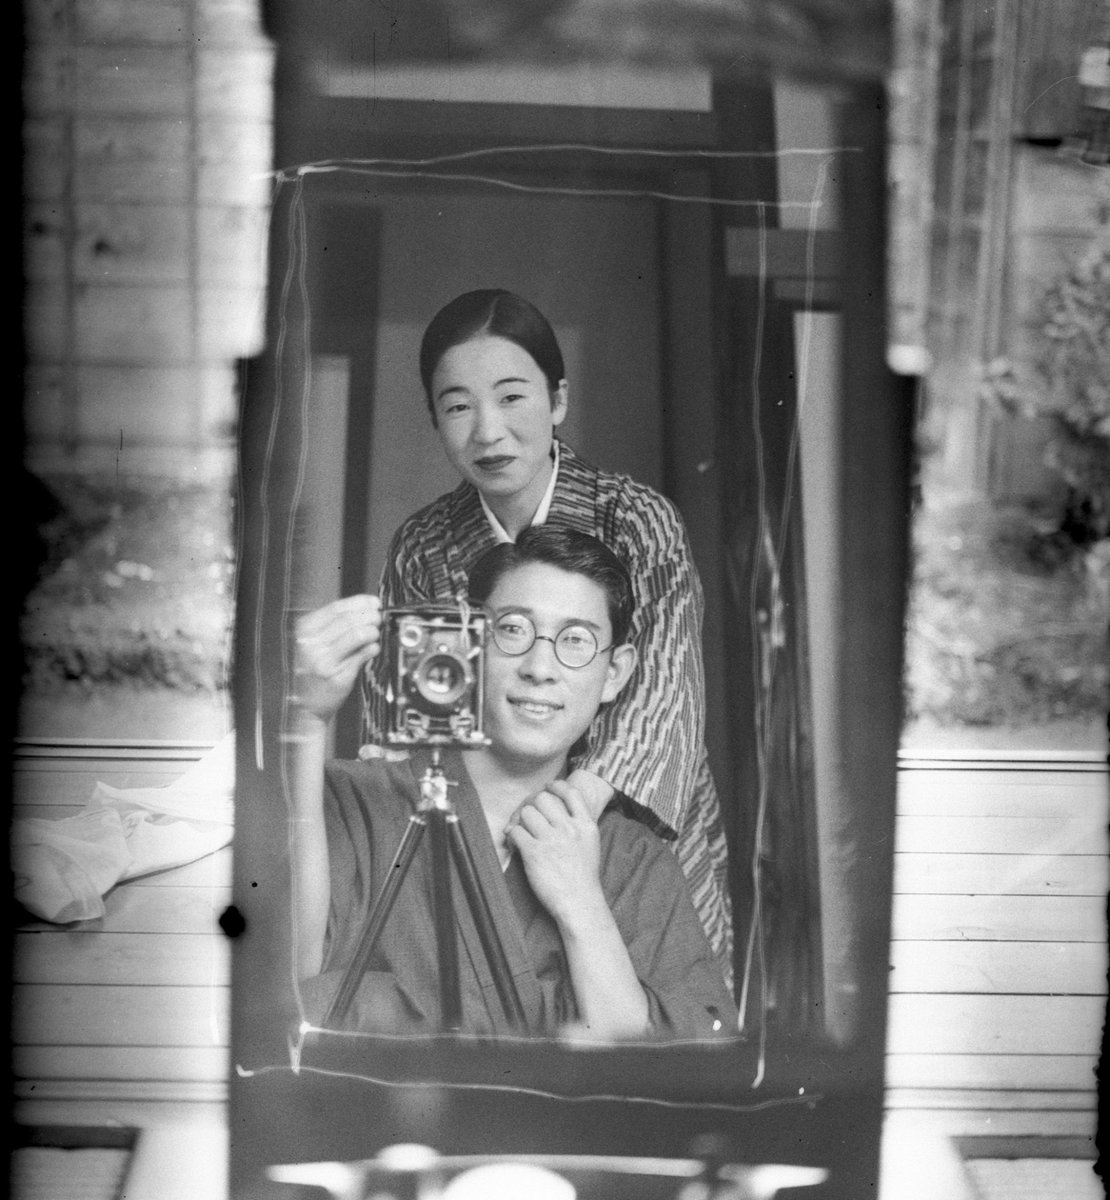 日本の古い写真が海外で話題 鏡を使って自撮りをする日本人カップル 話題の画像プラス